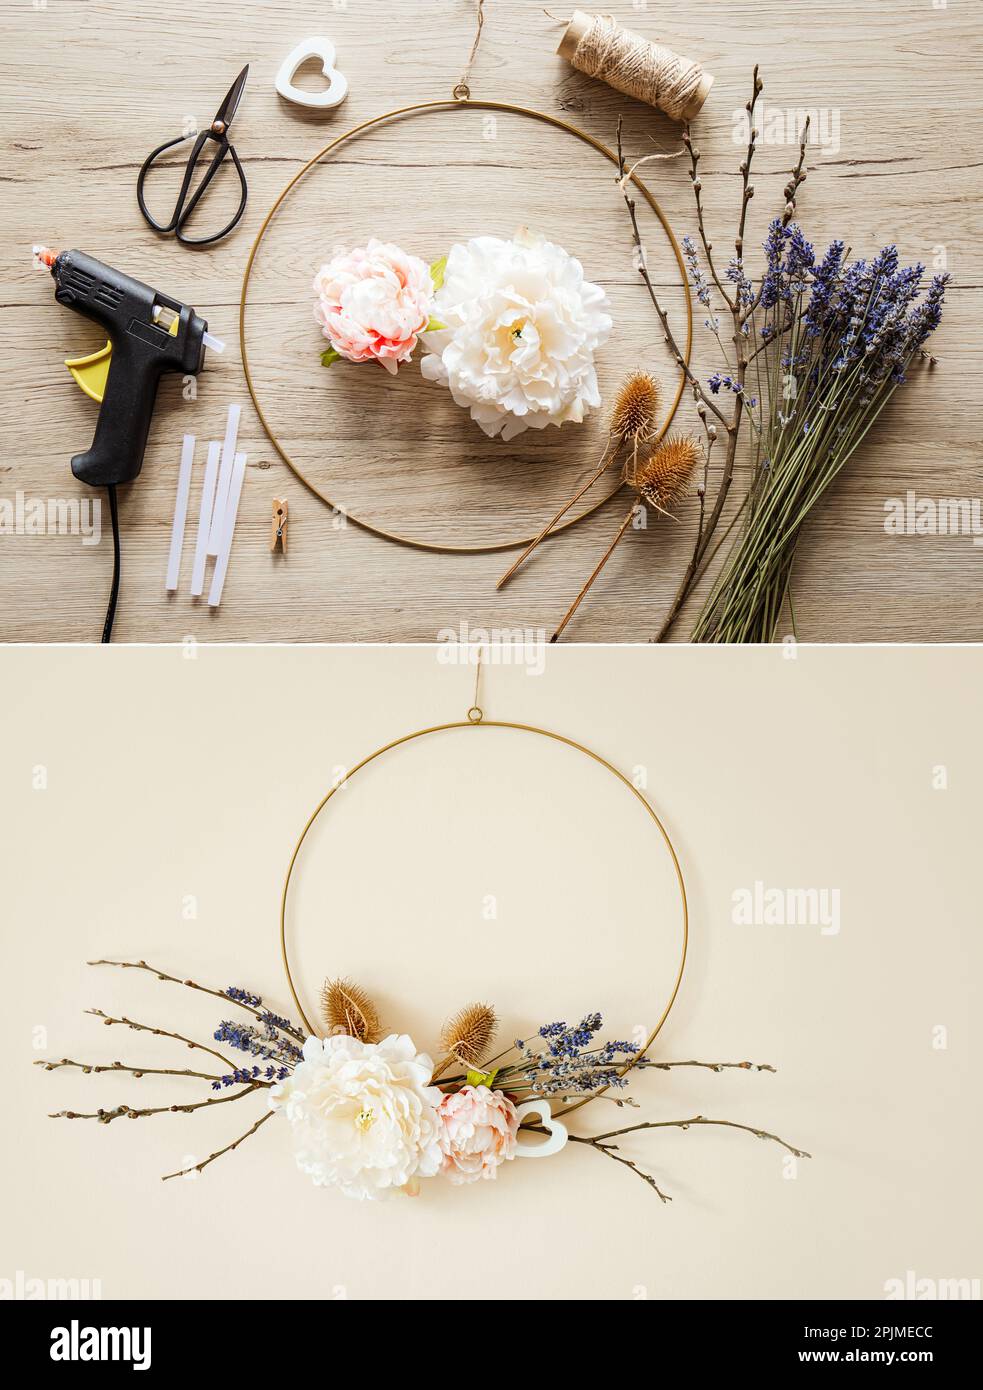 Ein moderner Kranz im Frühlingsdesign mit Blumenmotiv zur Innendekoration. Runder Metallbügelrahmen mit verschiedenen echten und künstlichen Zweigen und Blumen Stockfoto